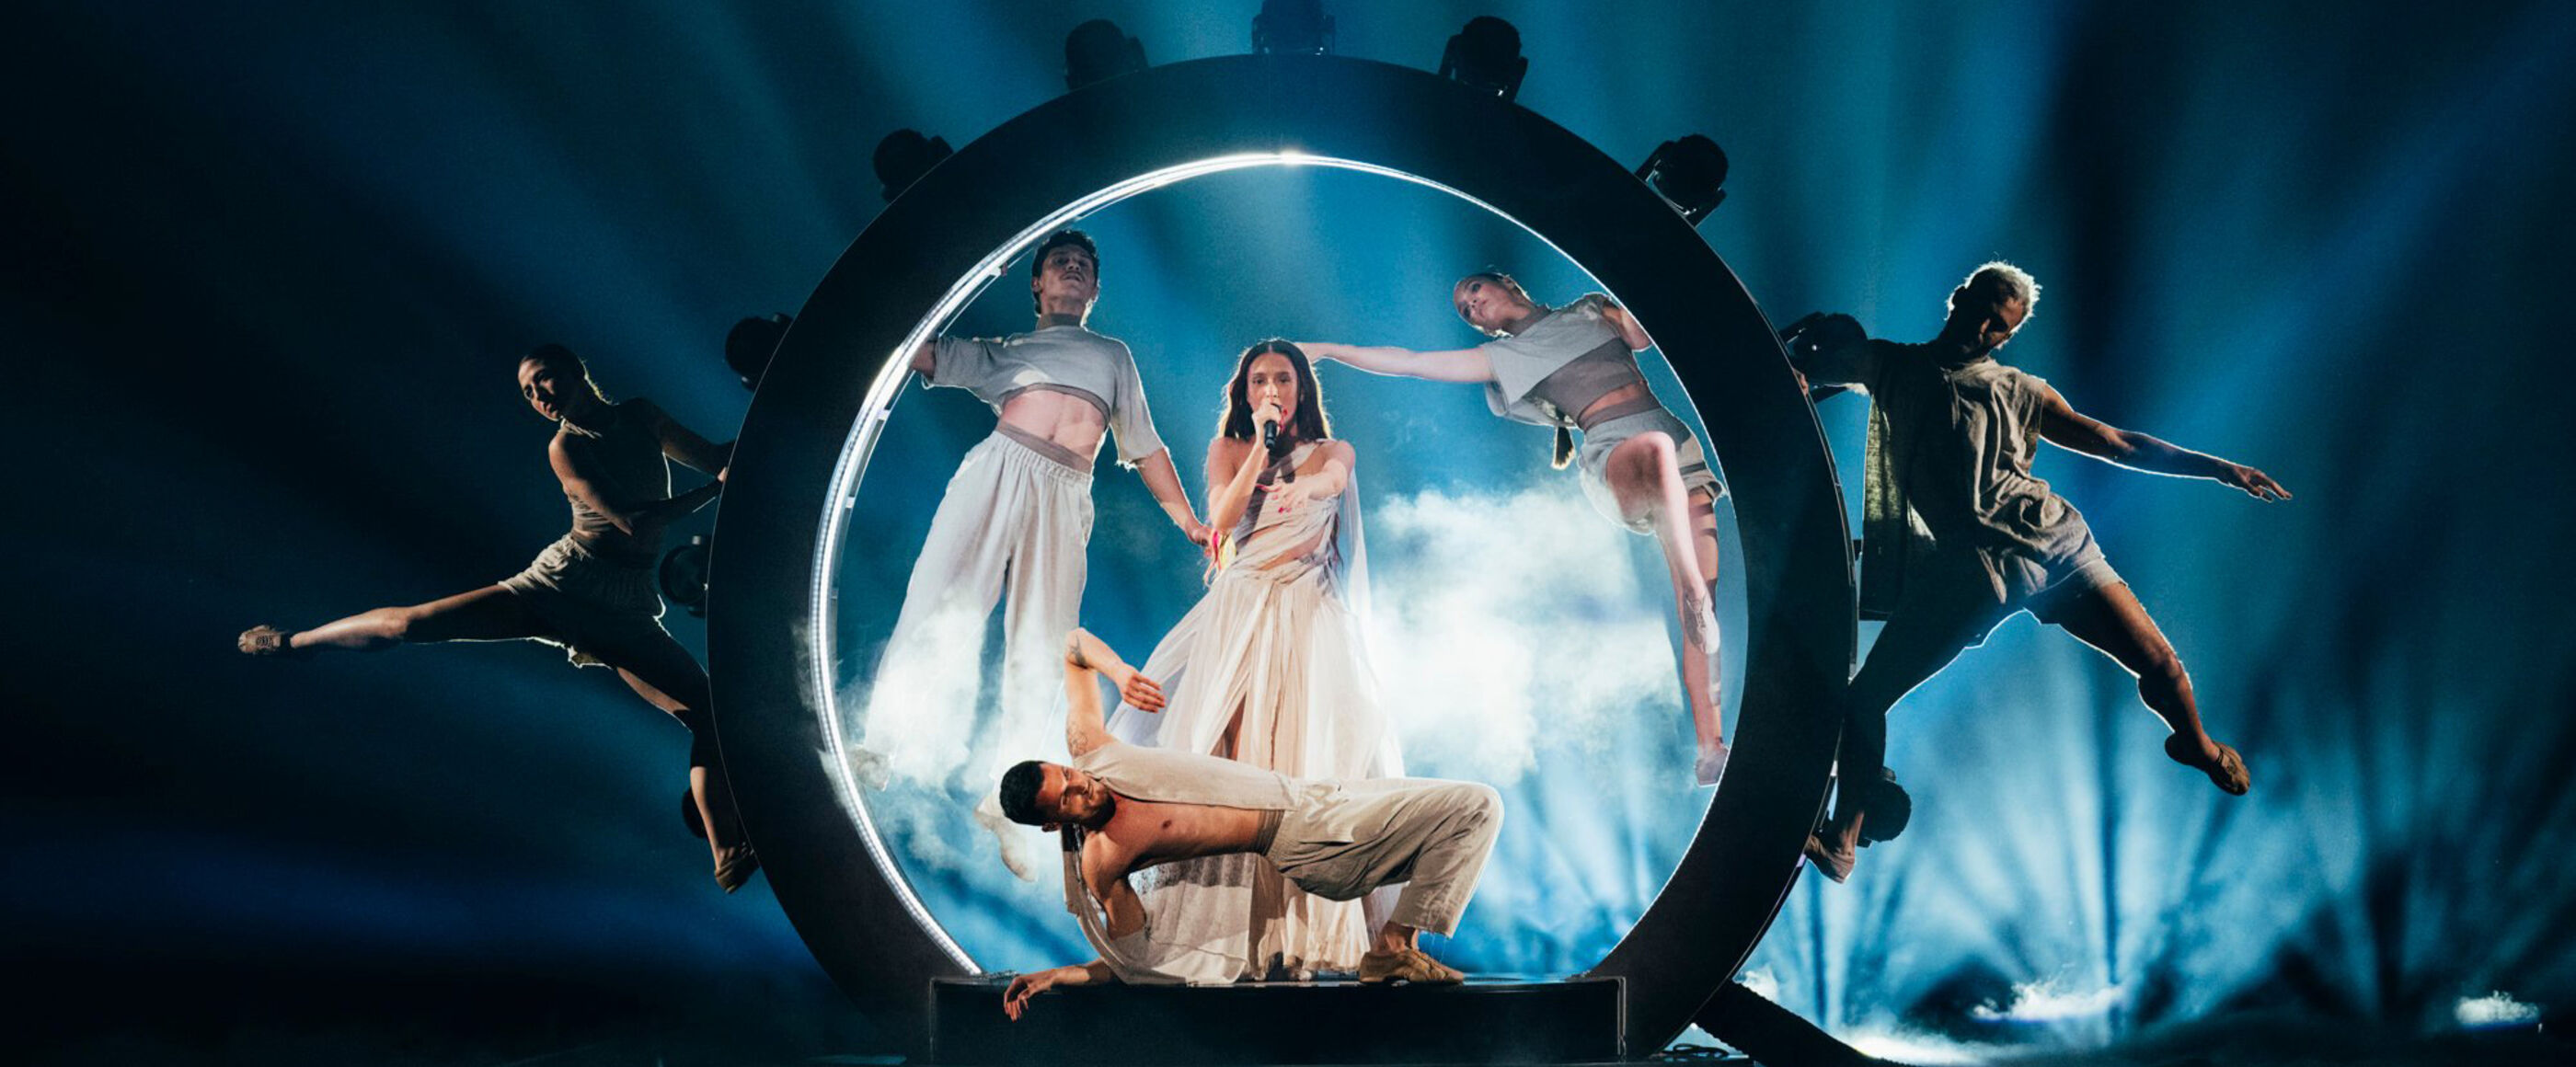 Eine als Frau lesbare Person singt in einem beleuchteten Kreis, umgeben von Tänzern.